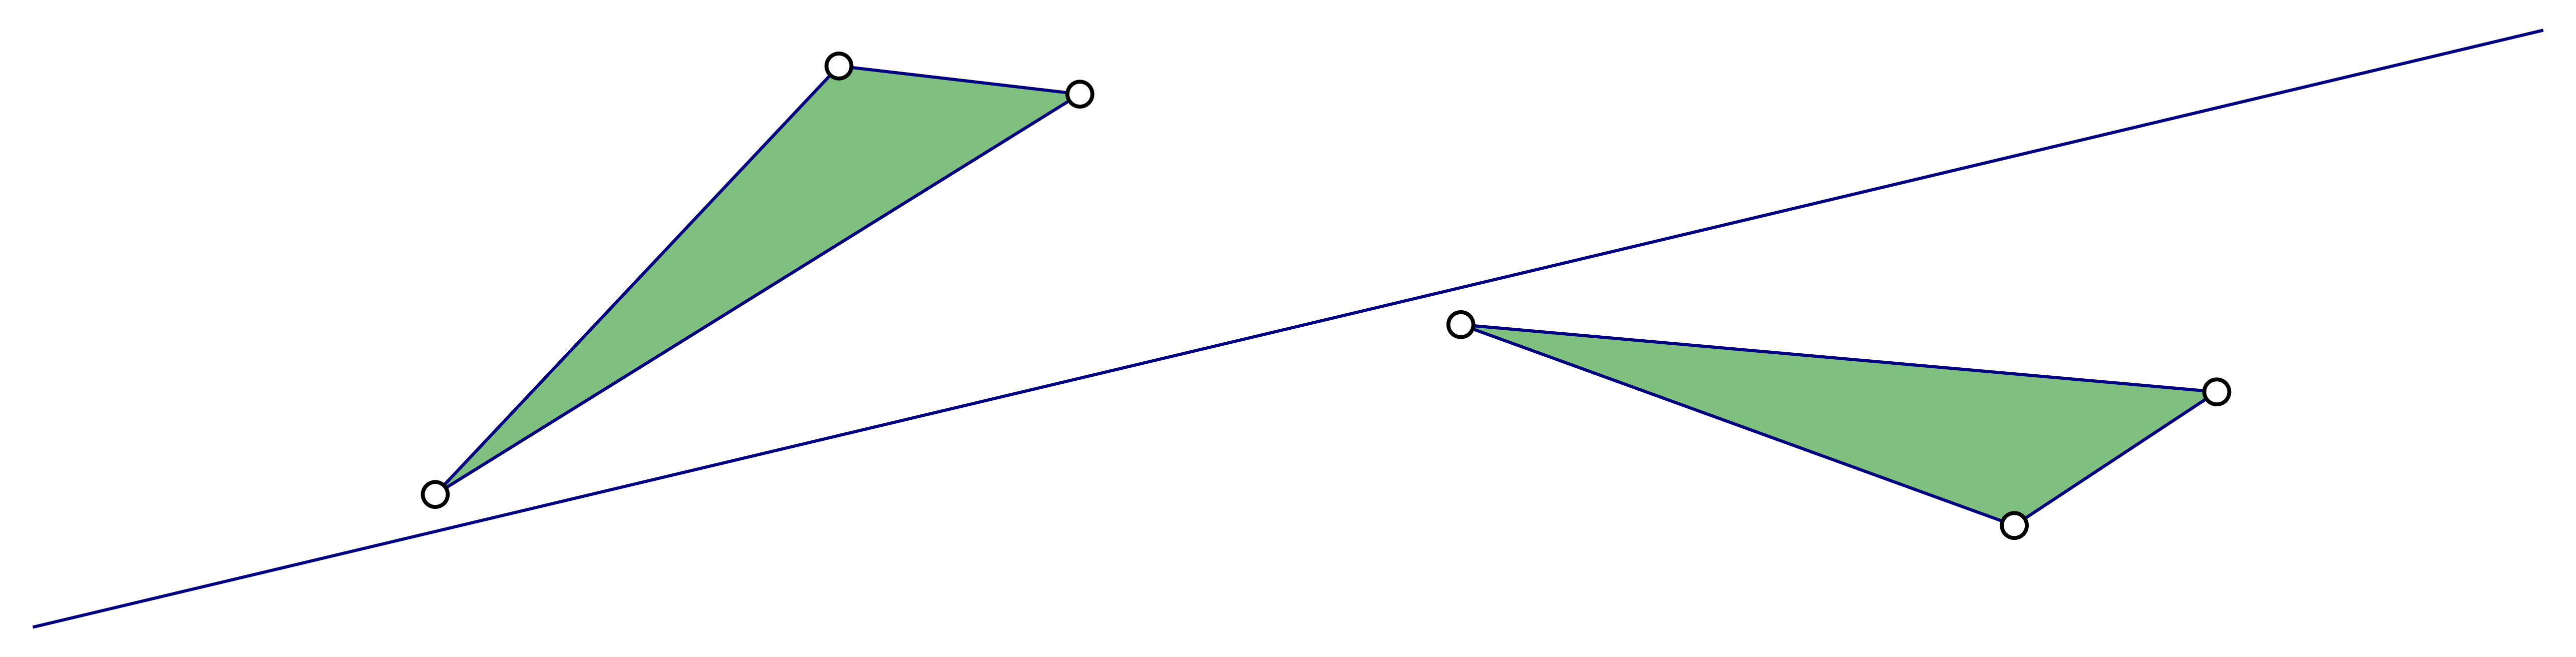 Slika prikazuje trokut i njegovu sliku koja je nastala kombinacijom preslikavanja.